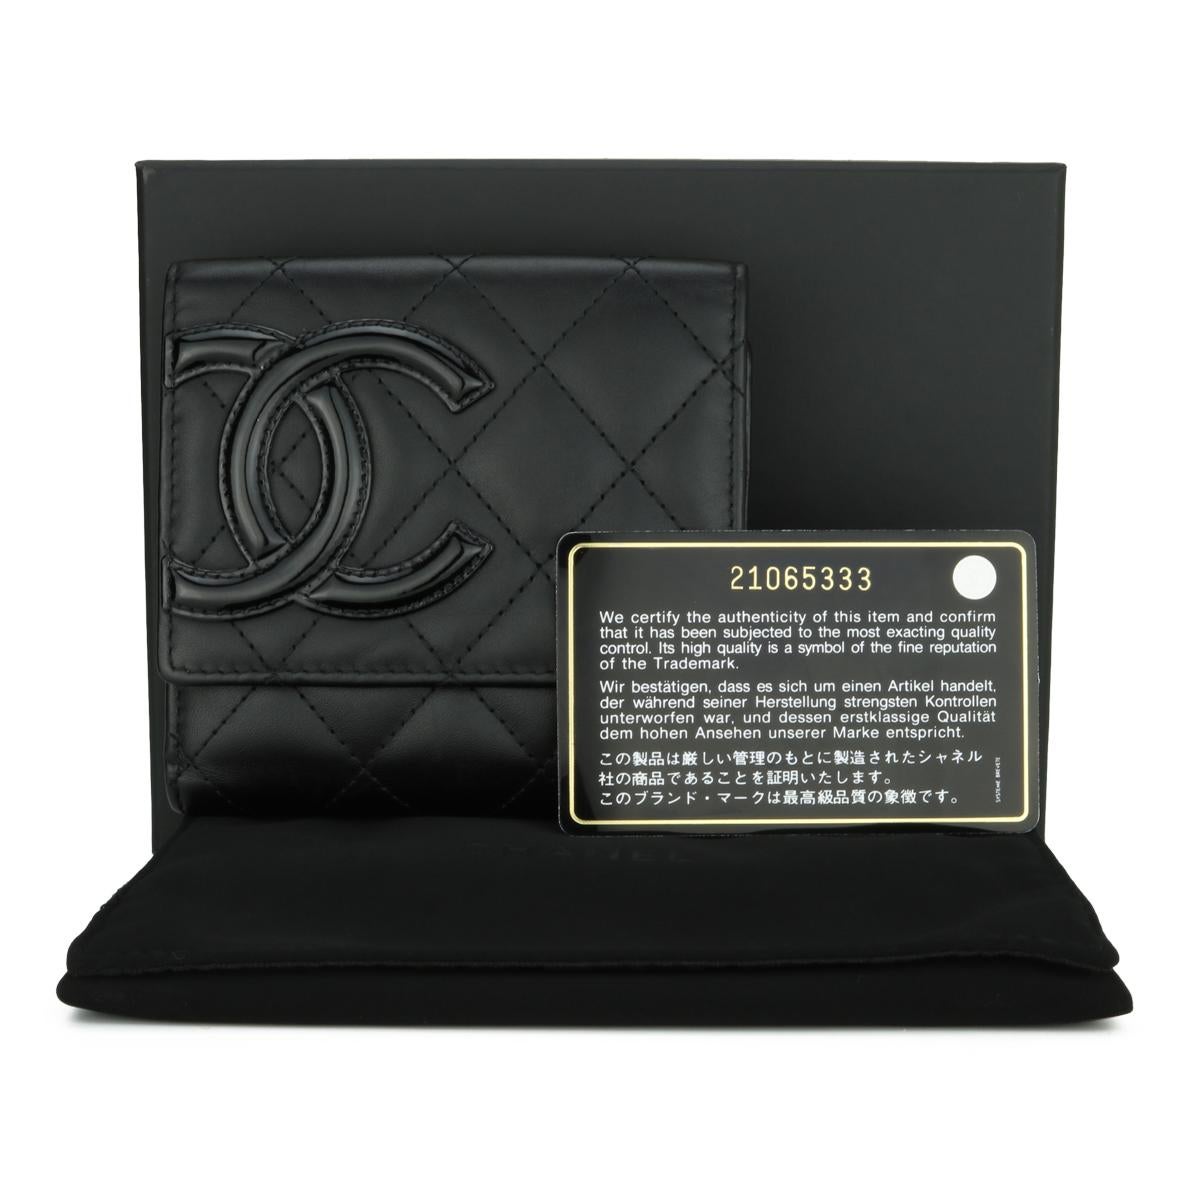 CHANEL Quilted Trifold Cambon Small Flap Wallet Black Calfskin Silver Hardware 2016.

Dieses atemberaubende Portemonnaie ist in sehr gutem Zustand, das Portemonnaie hat noch seine ursprüngliche Form, und die Hardware ist noch sehr glänzend.

-